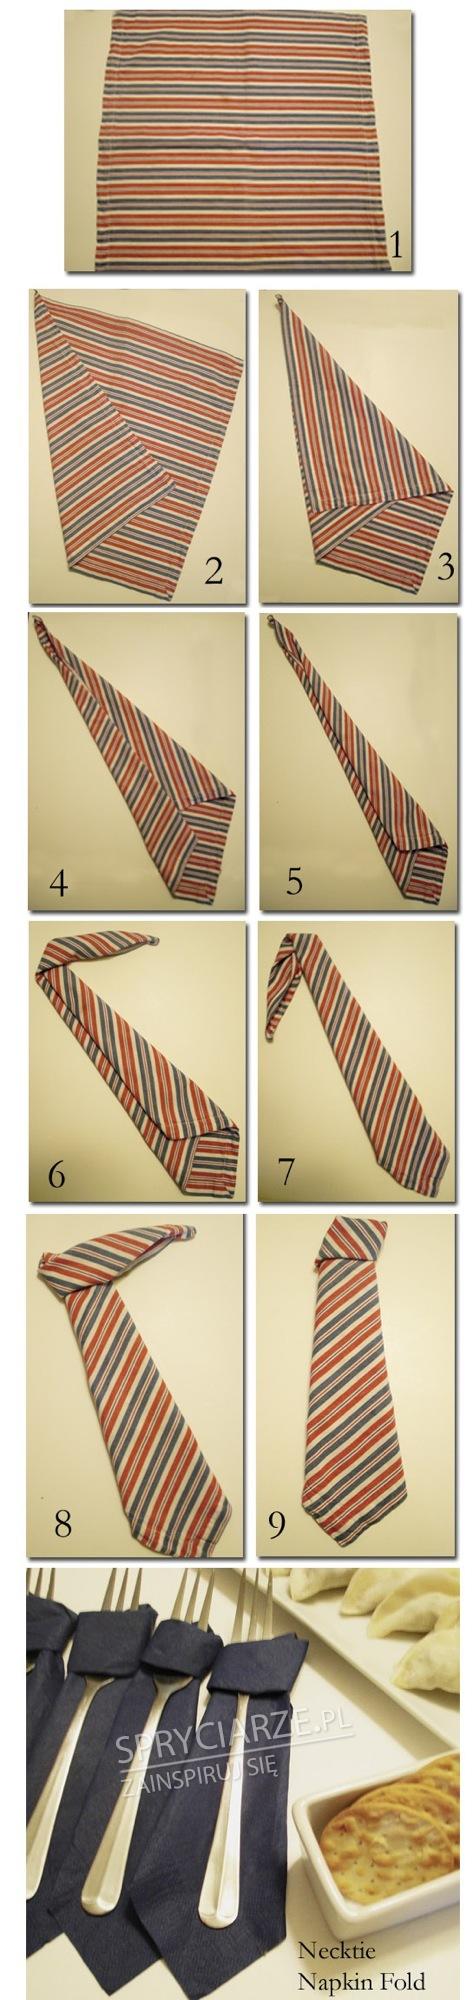 Składanie serwetki w krawat